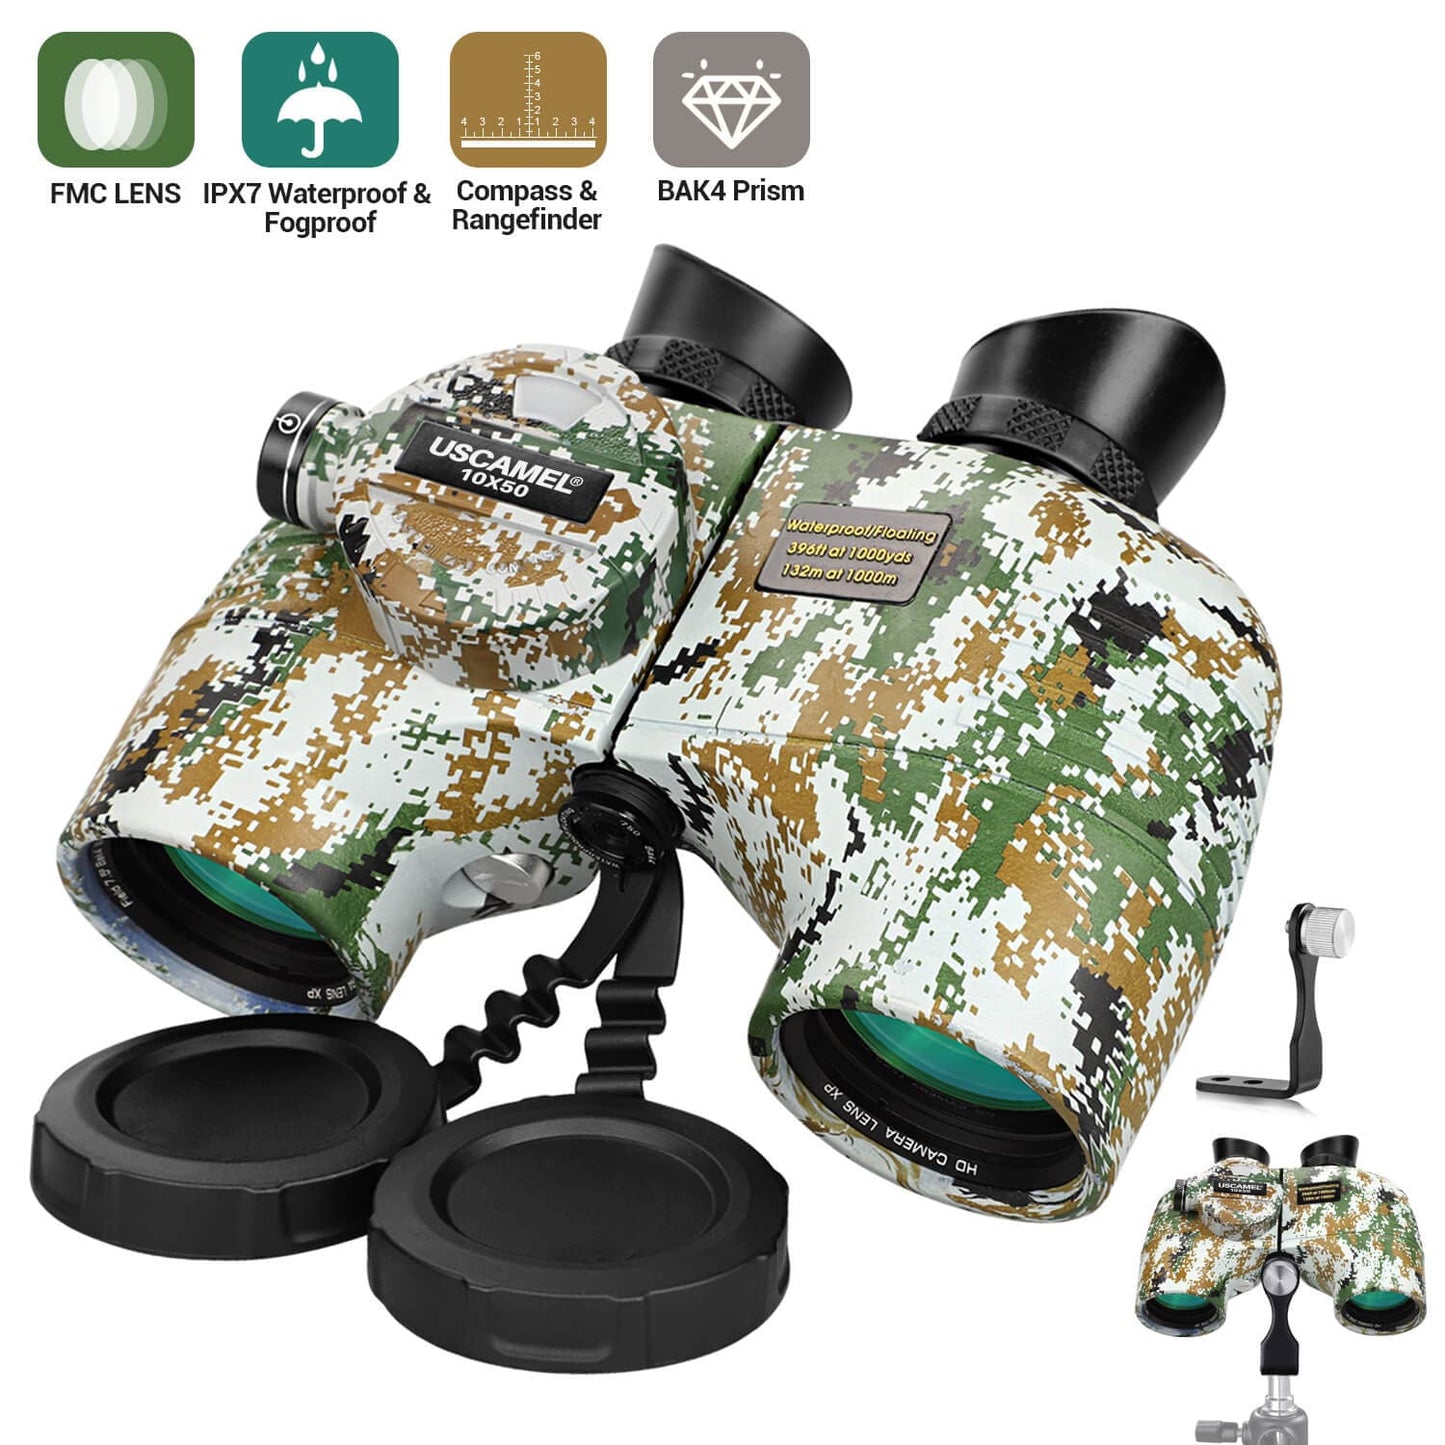 10x50 Marine Binoculars With Rangefinder & Compass